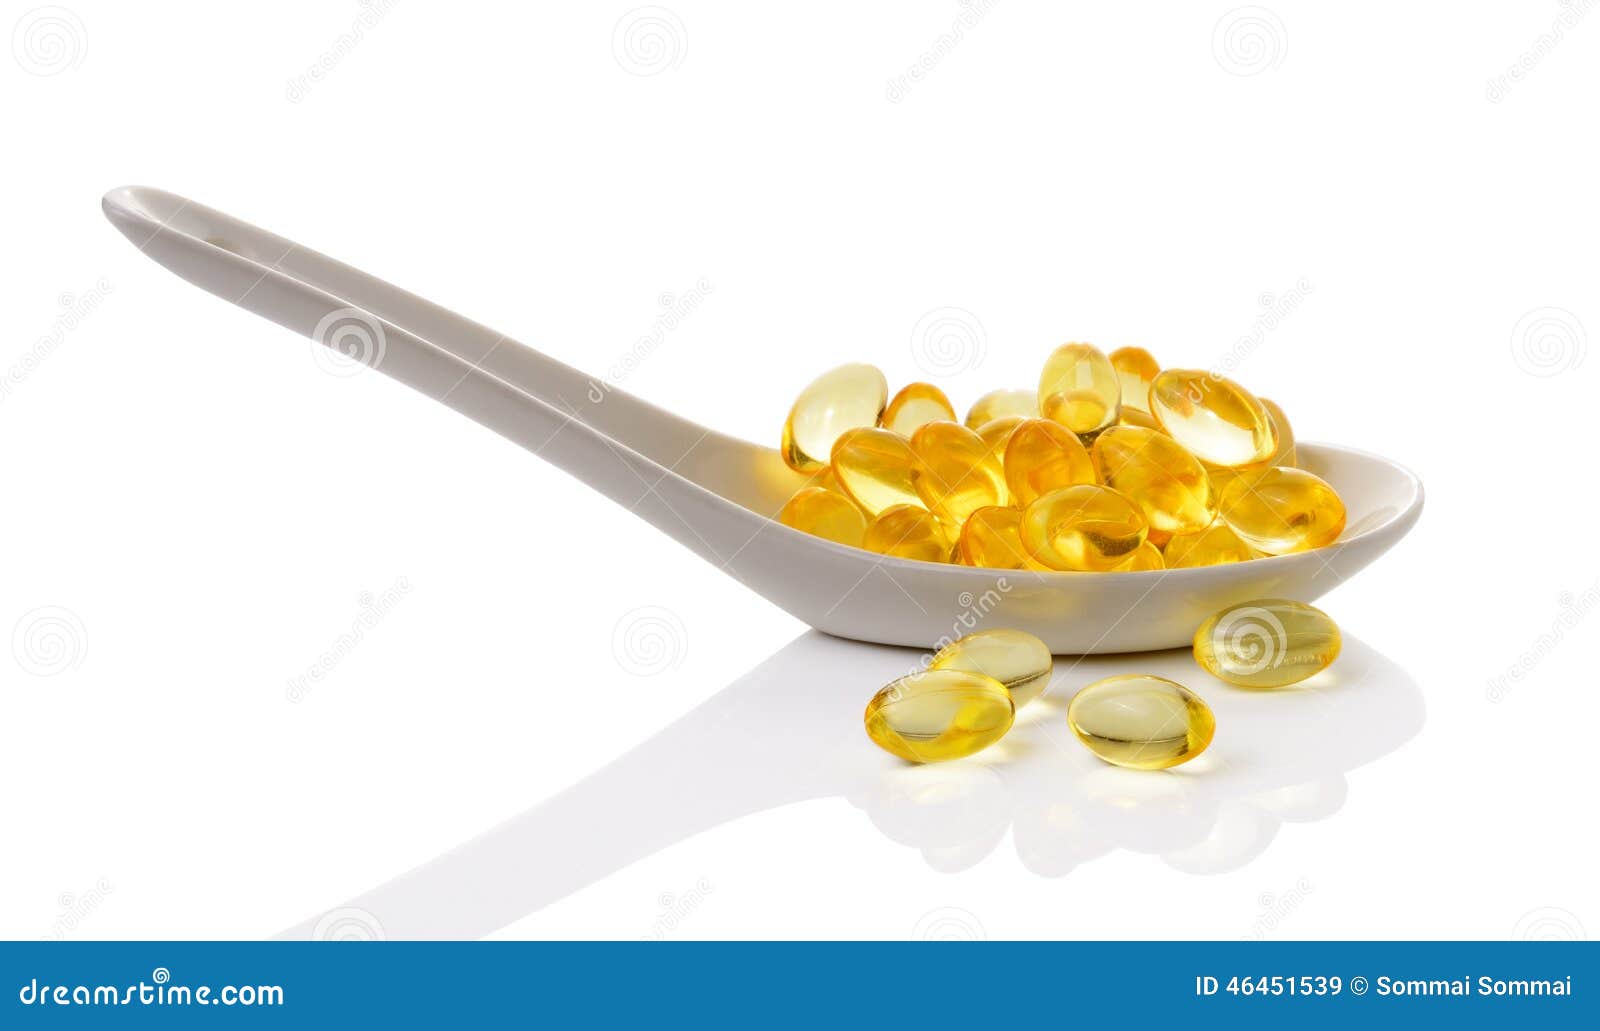 cod liver oil omega 3 gel capsules in spoon